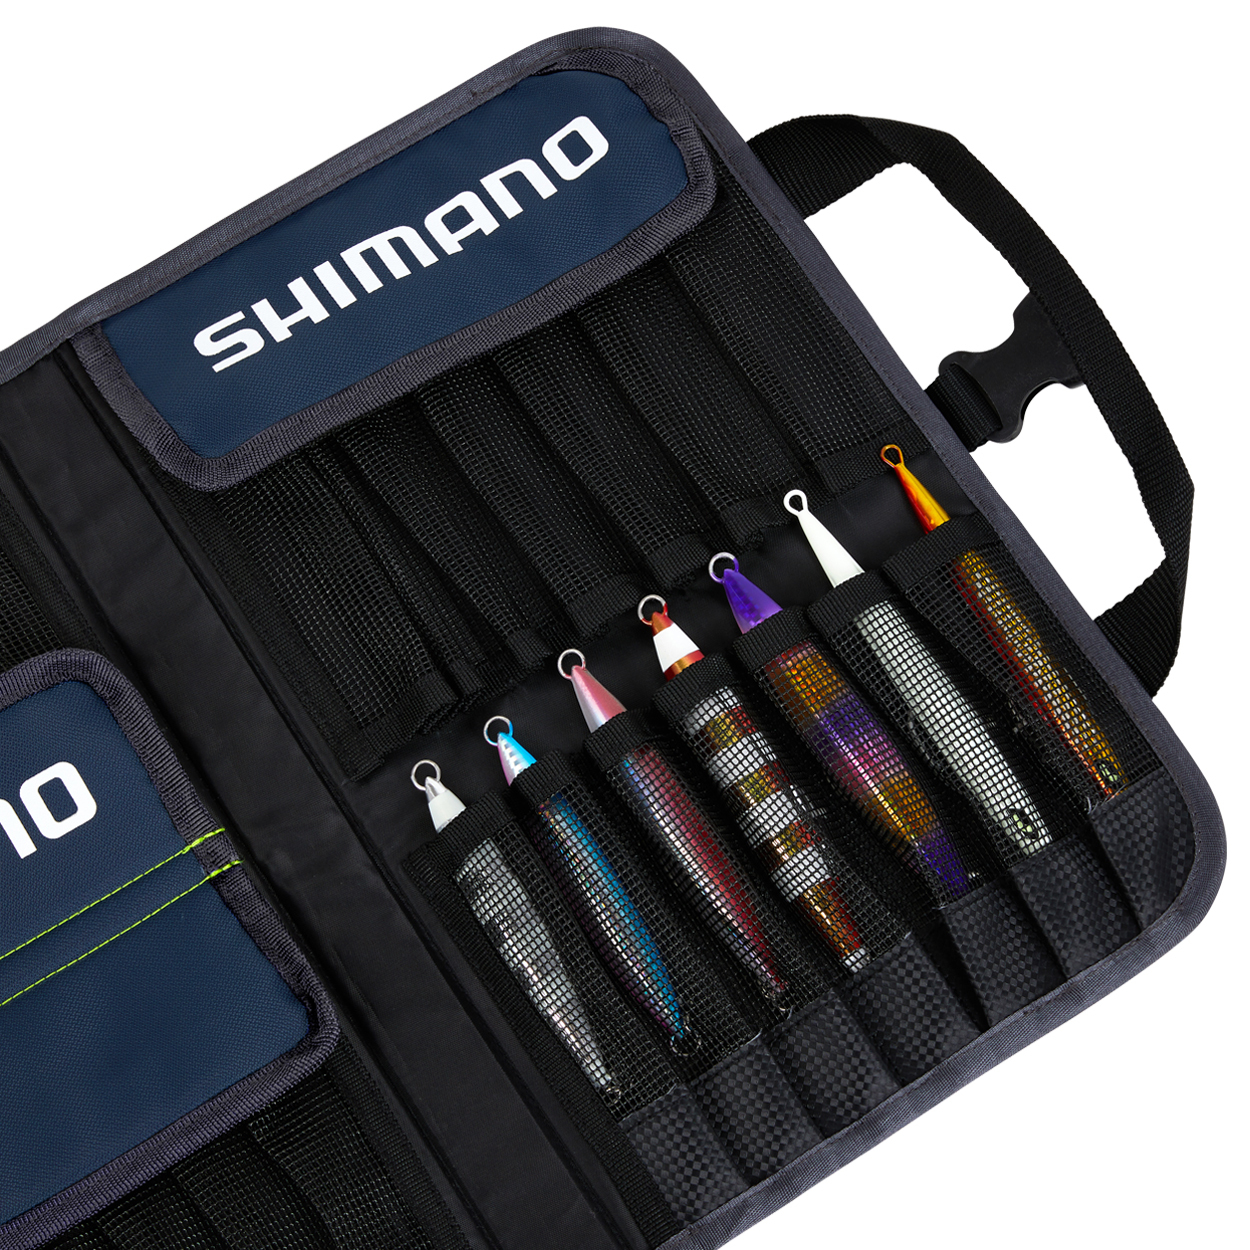 Shimano 2020 Saltwater Jig Case Fishing Lure Bag Luggage #LUGB-06